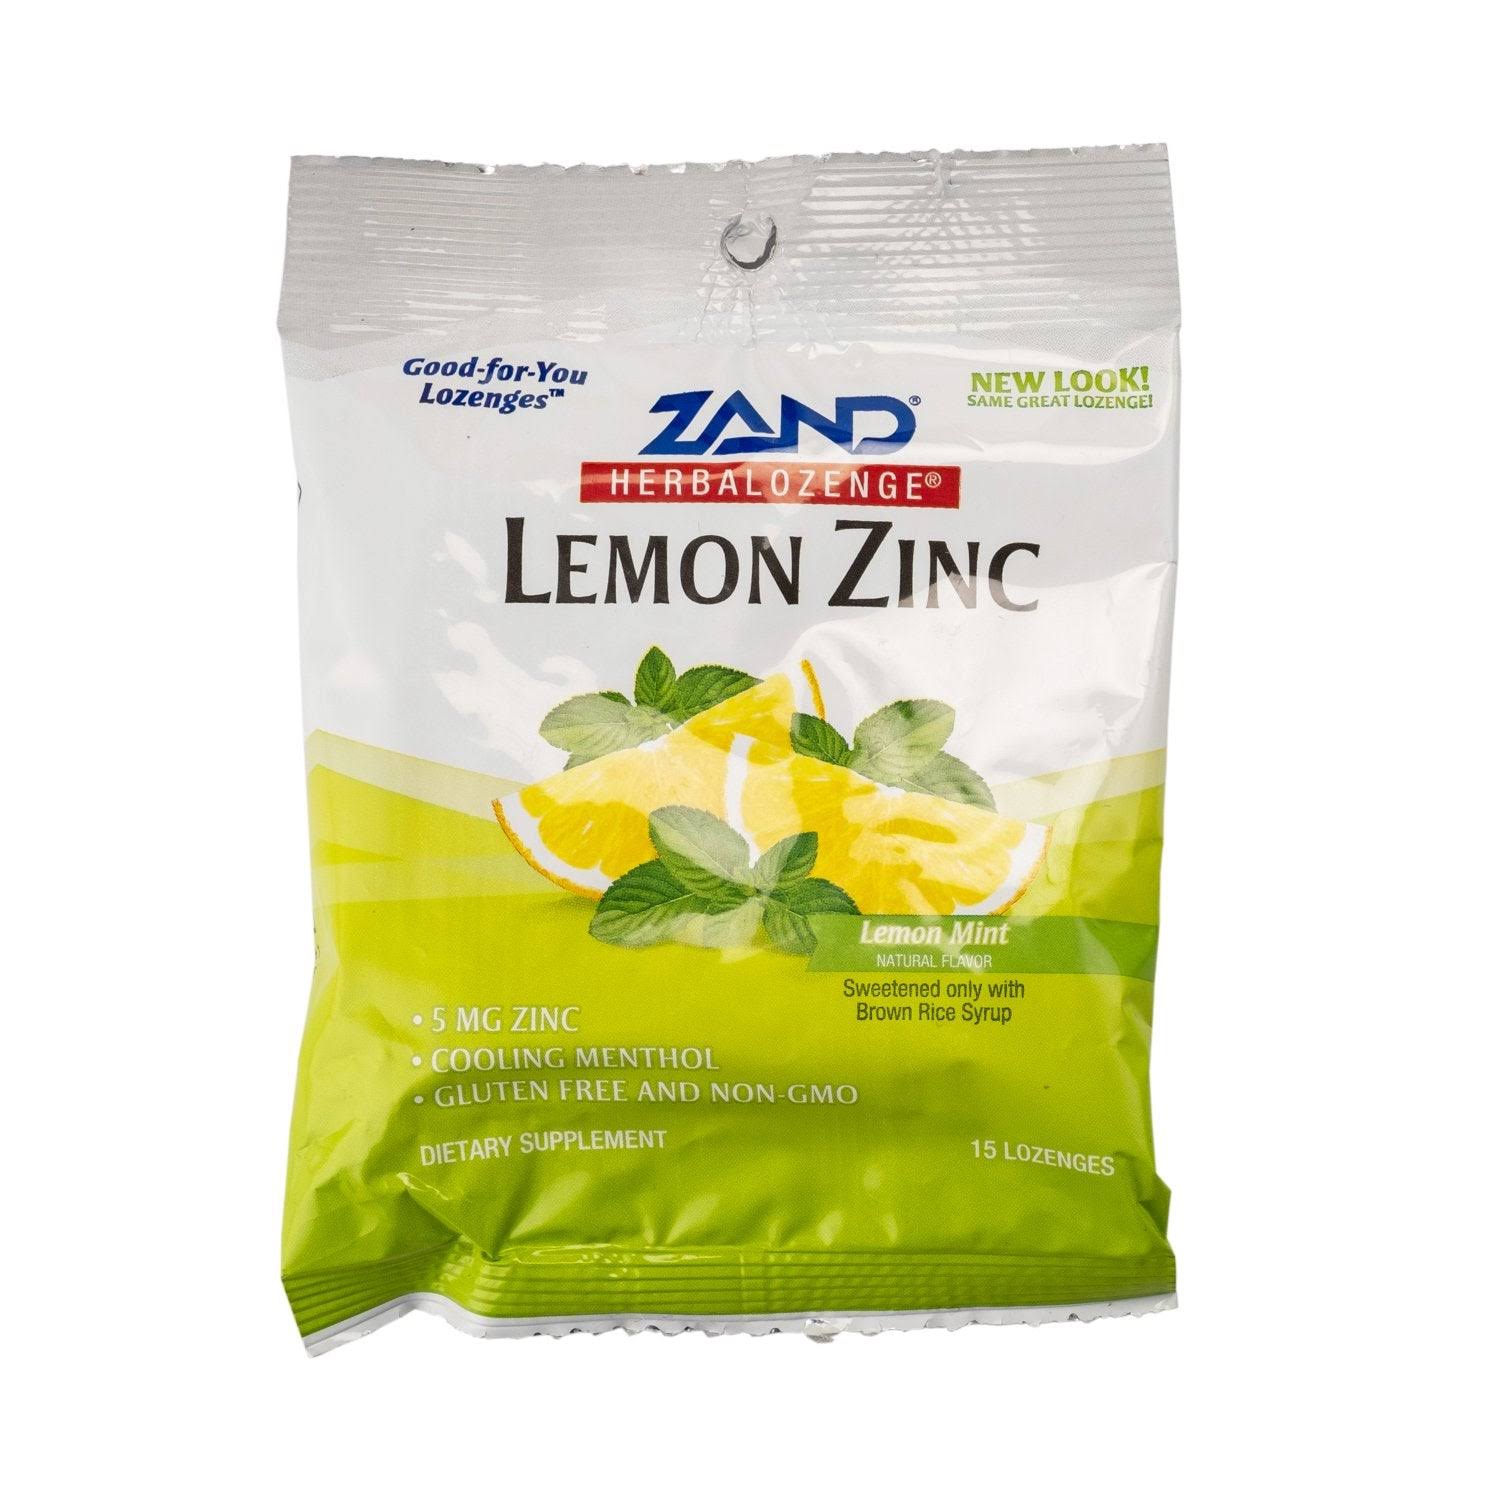 Zand Herbalozenge - Lemon Zinc, 15 Count